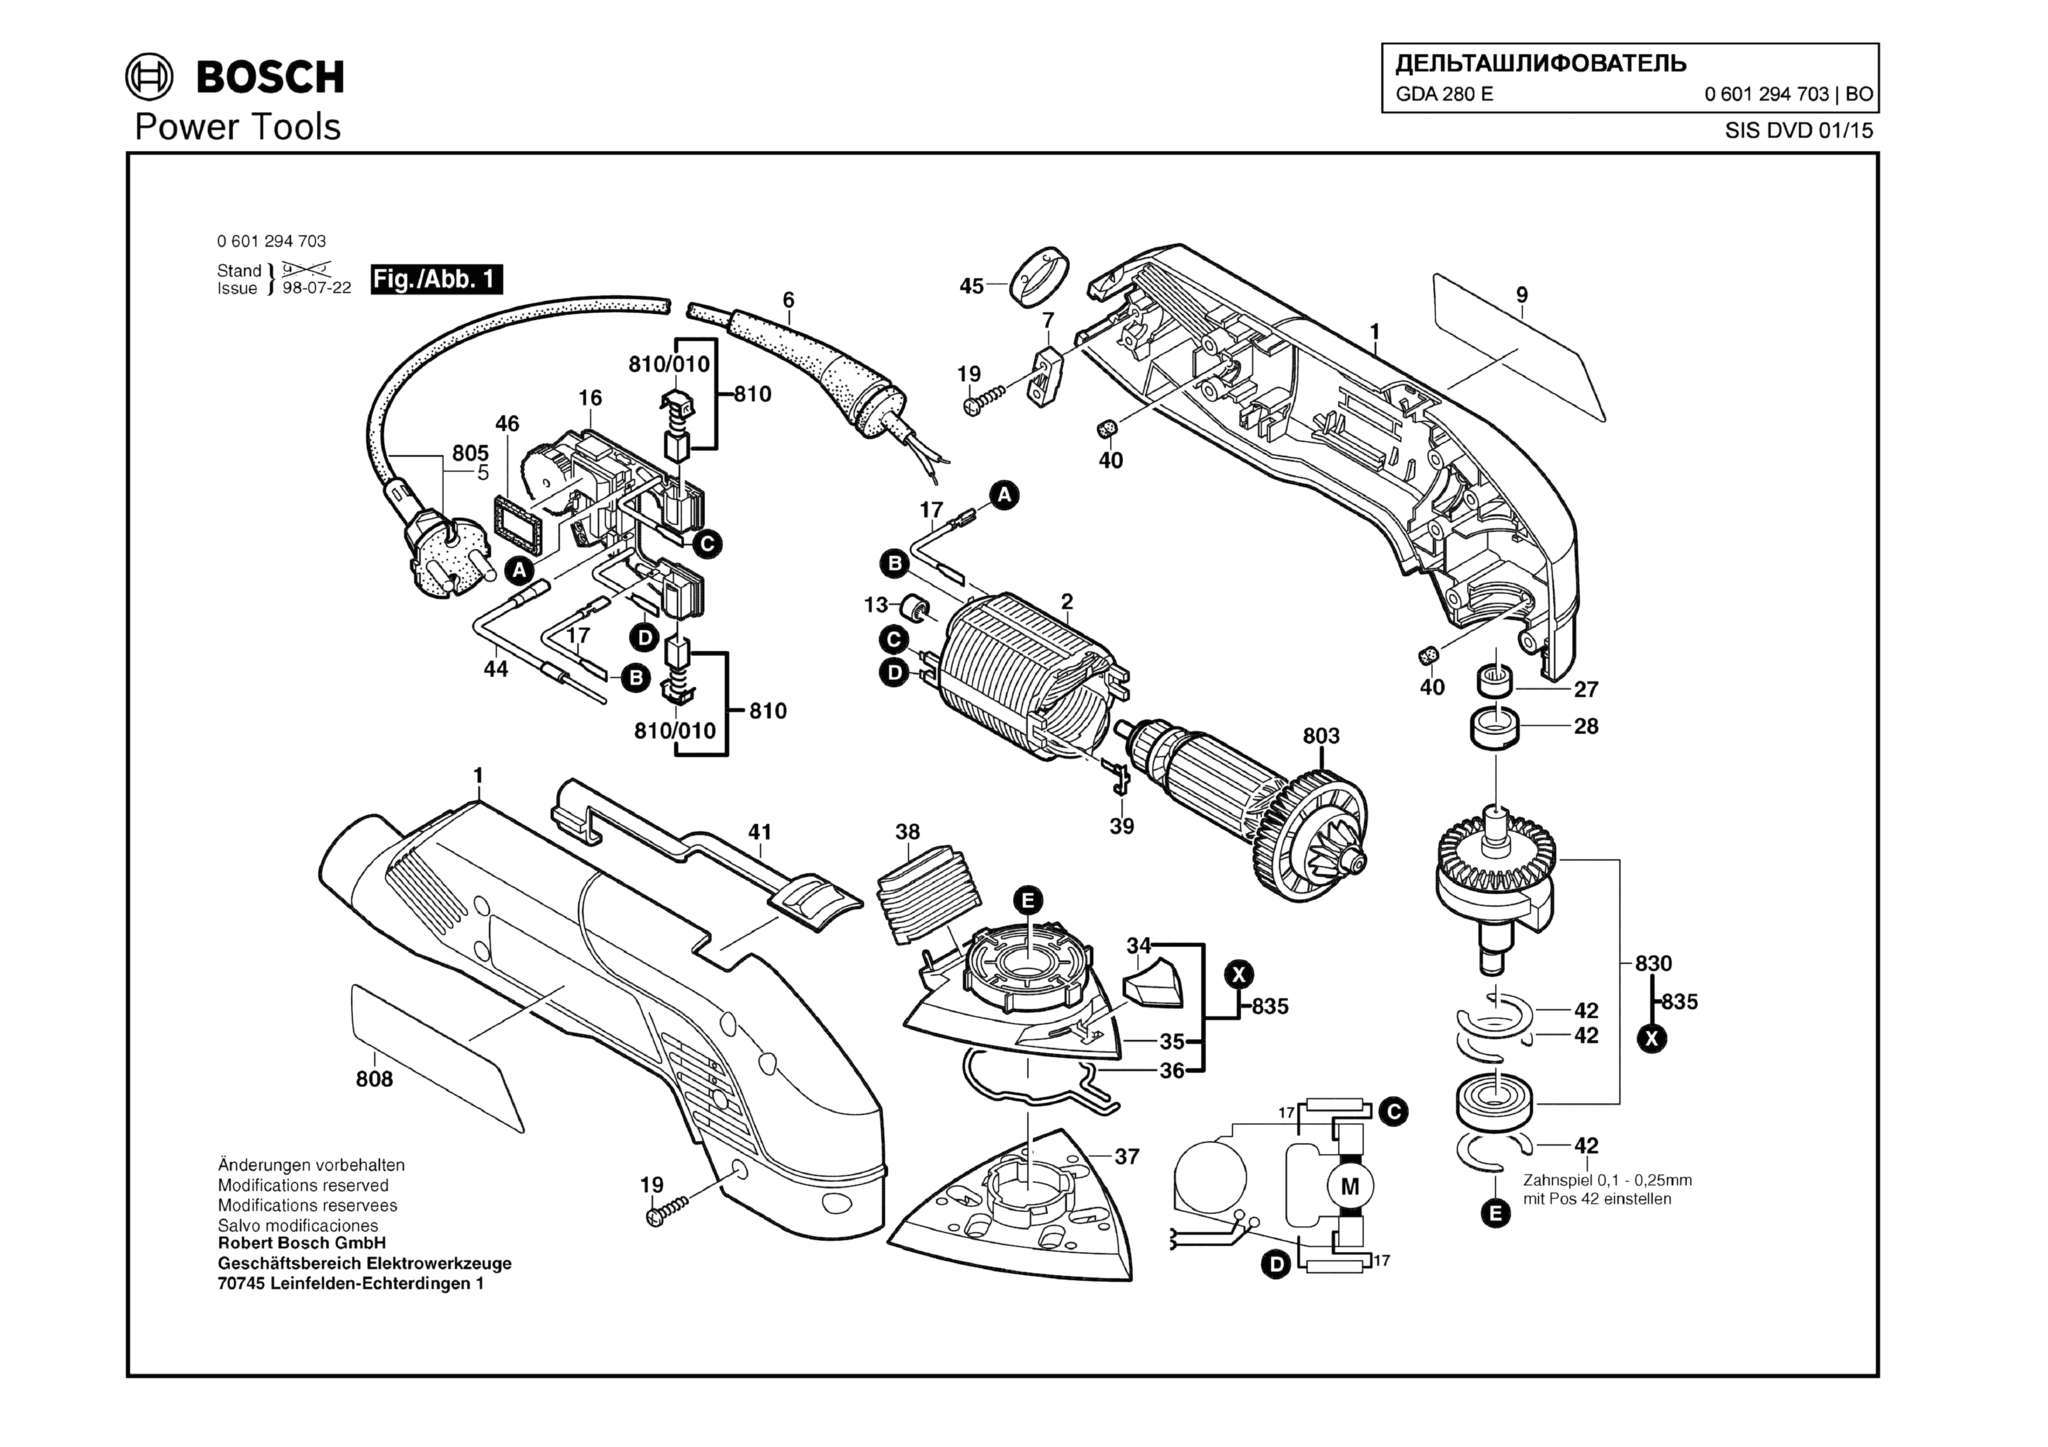 Запчасти, схема и деталировка Bosch GDA 280 E (ТИП 0601294703)